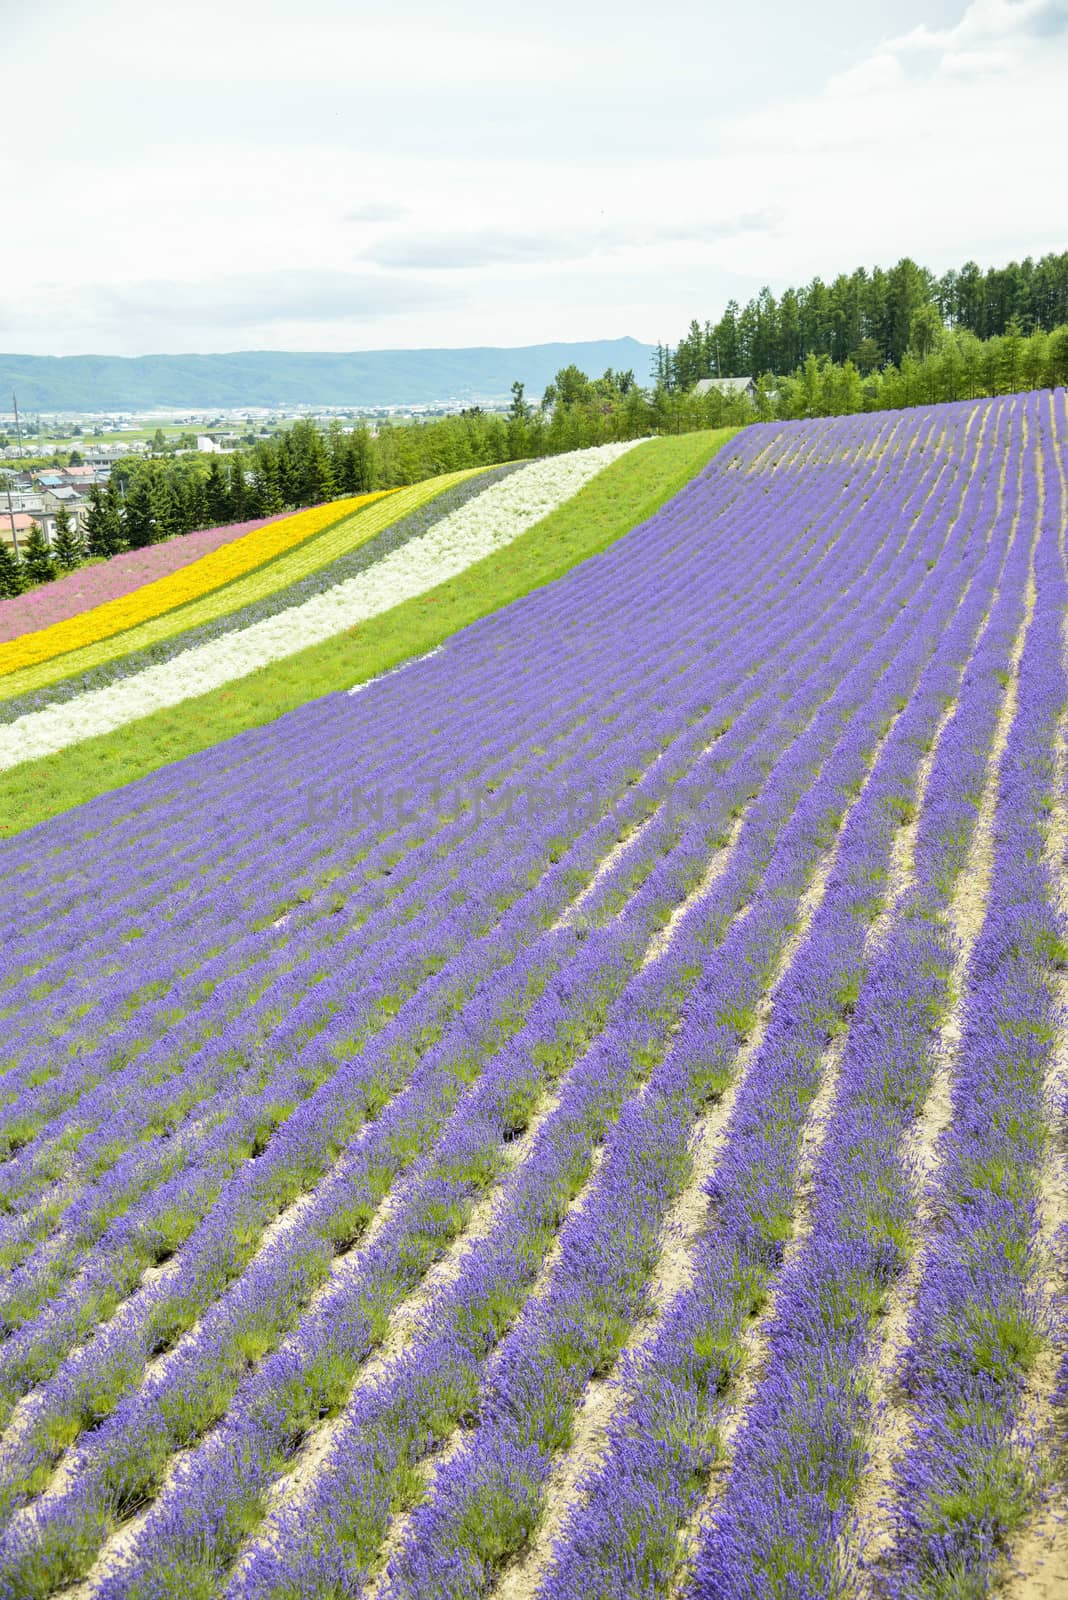 Colorful Lavender farm11 by gjeerawut